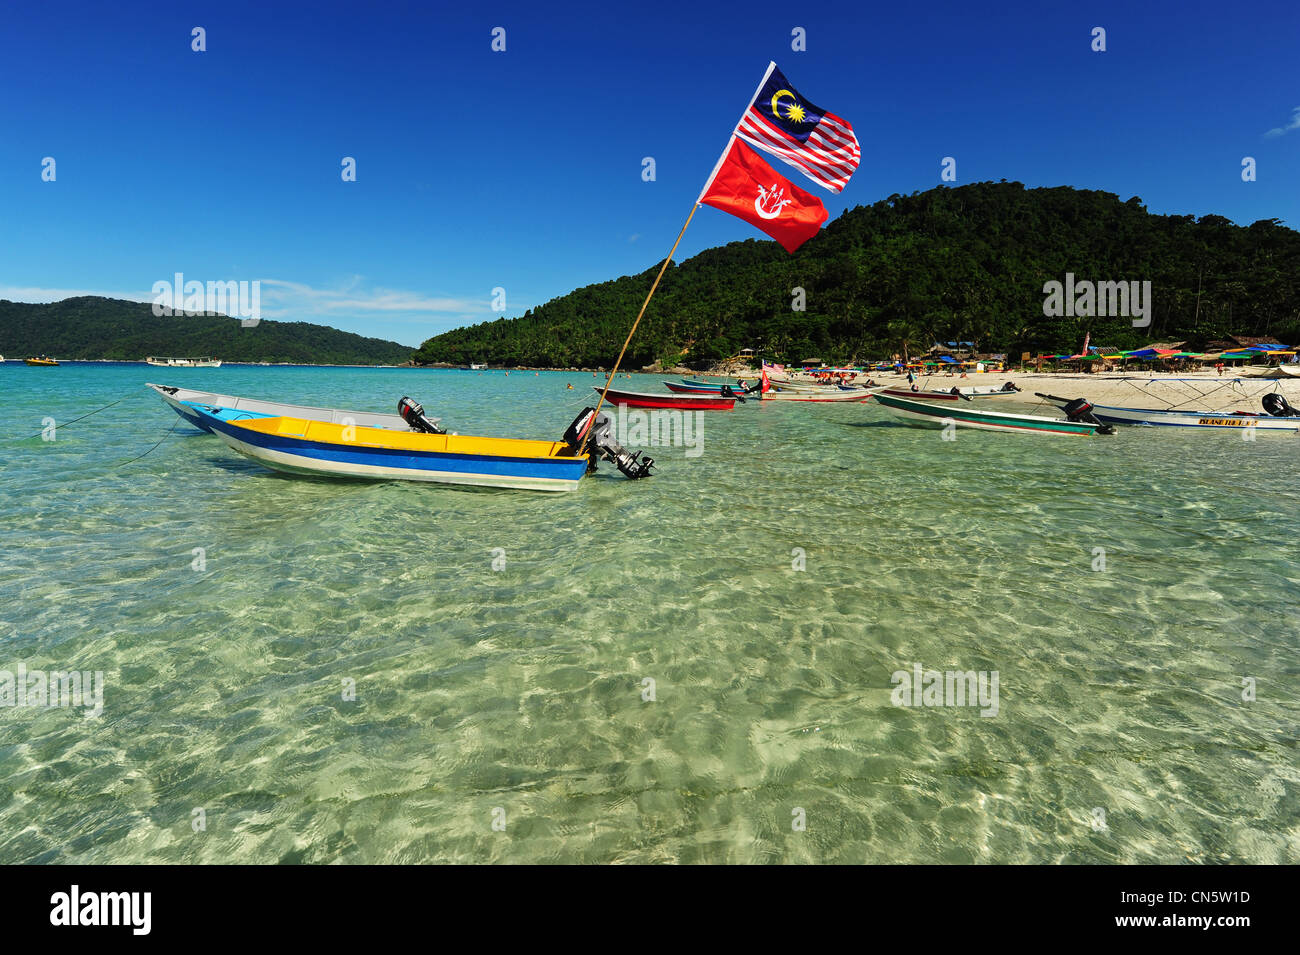 La Malaisie, l'Etat de Terengganu, Îles Perhentian Kecil, Perhentian, turquoise transparent voir et plage de sable blanc Banque D'Images